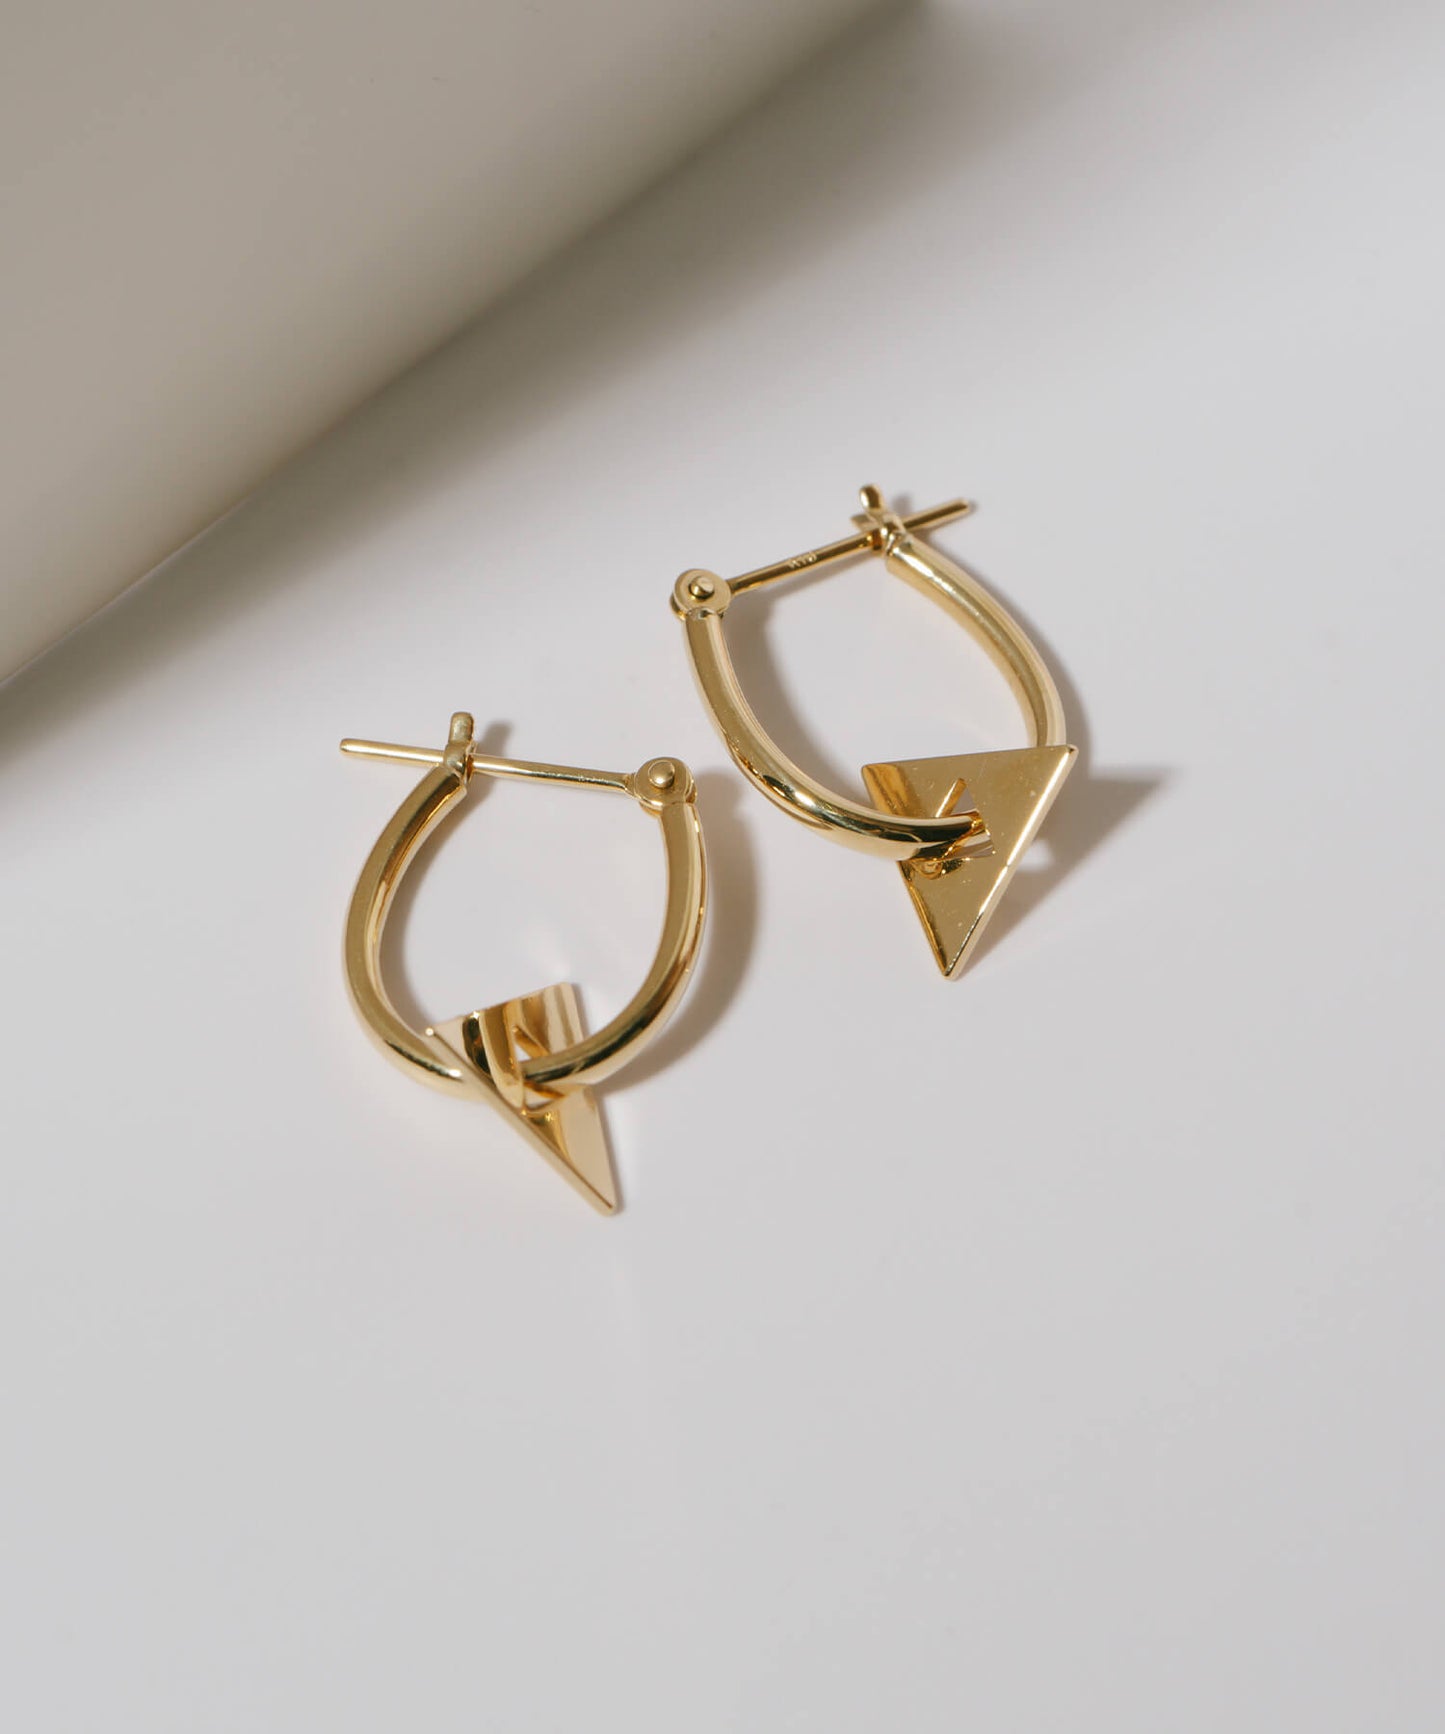 Dainty Triangle Earrings| FEFY-PE